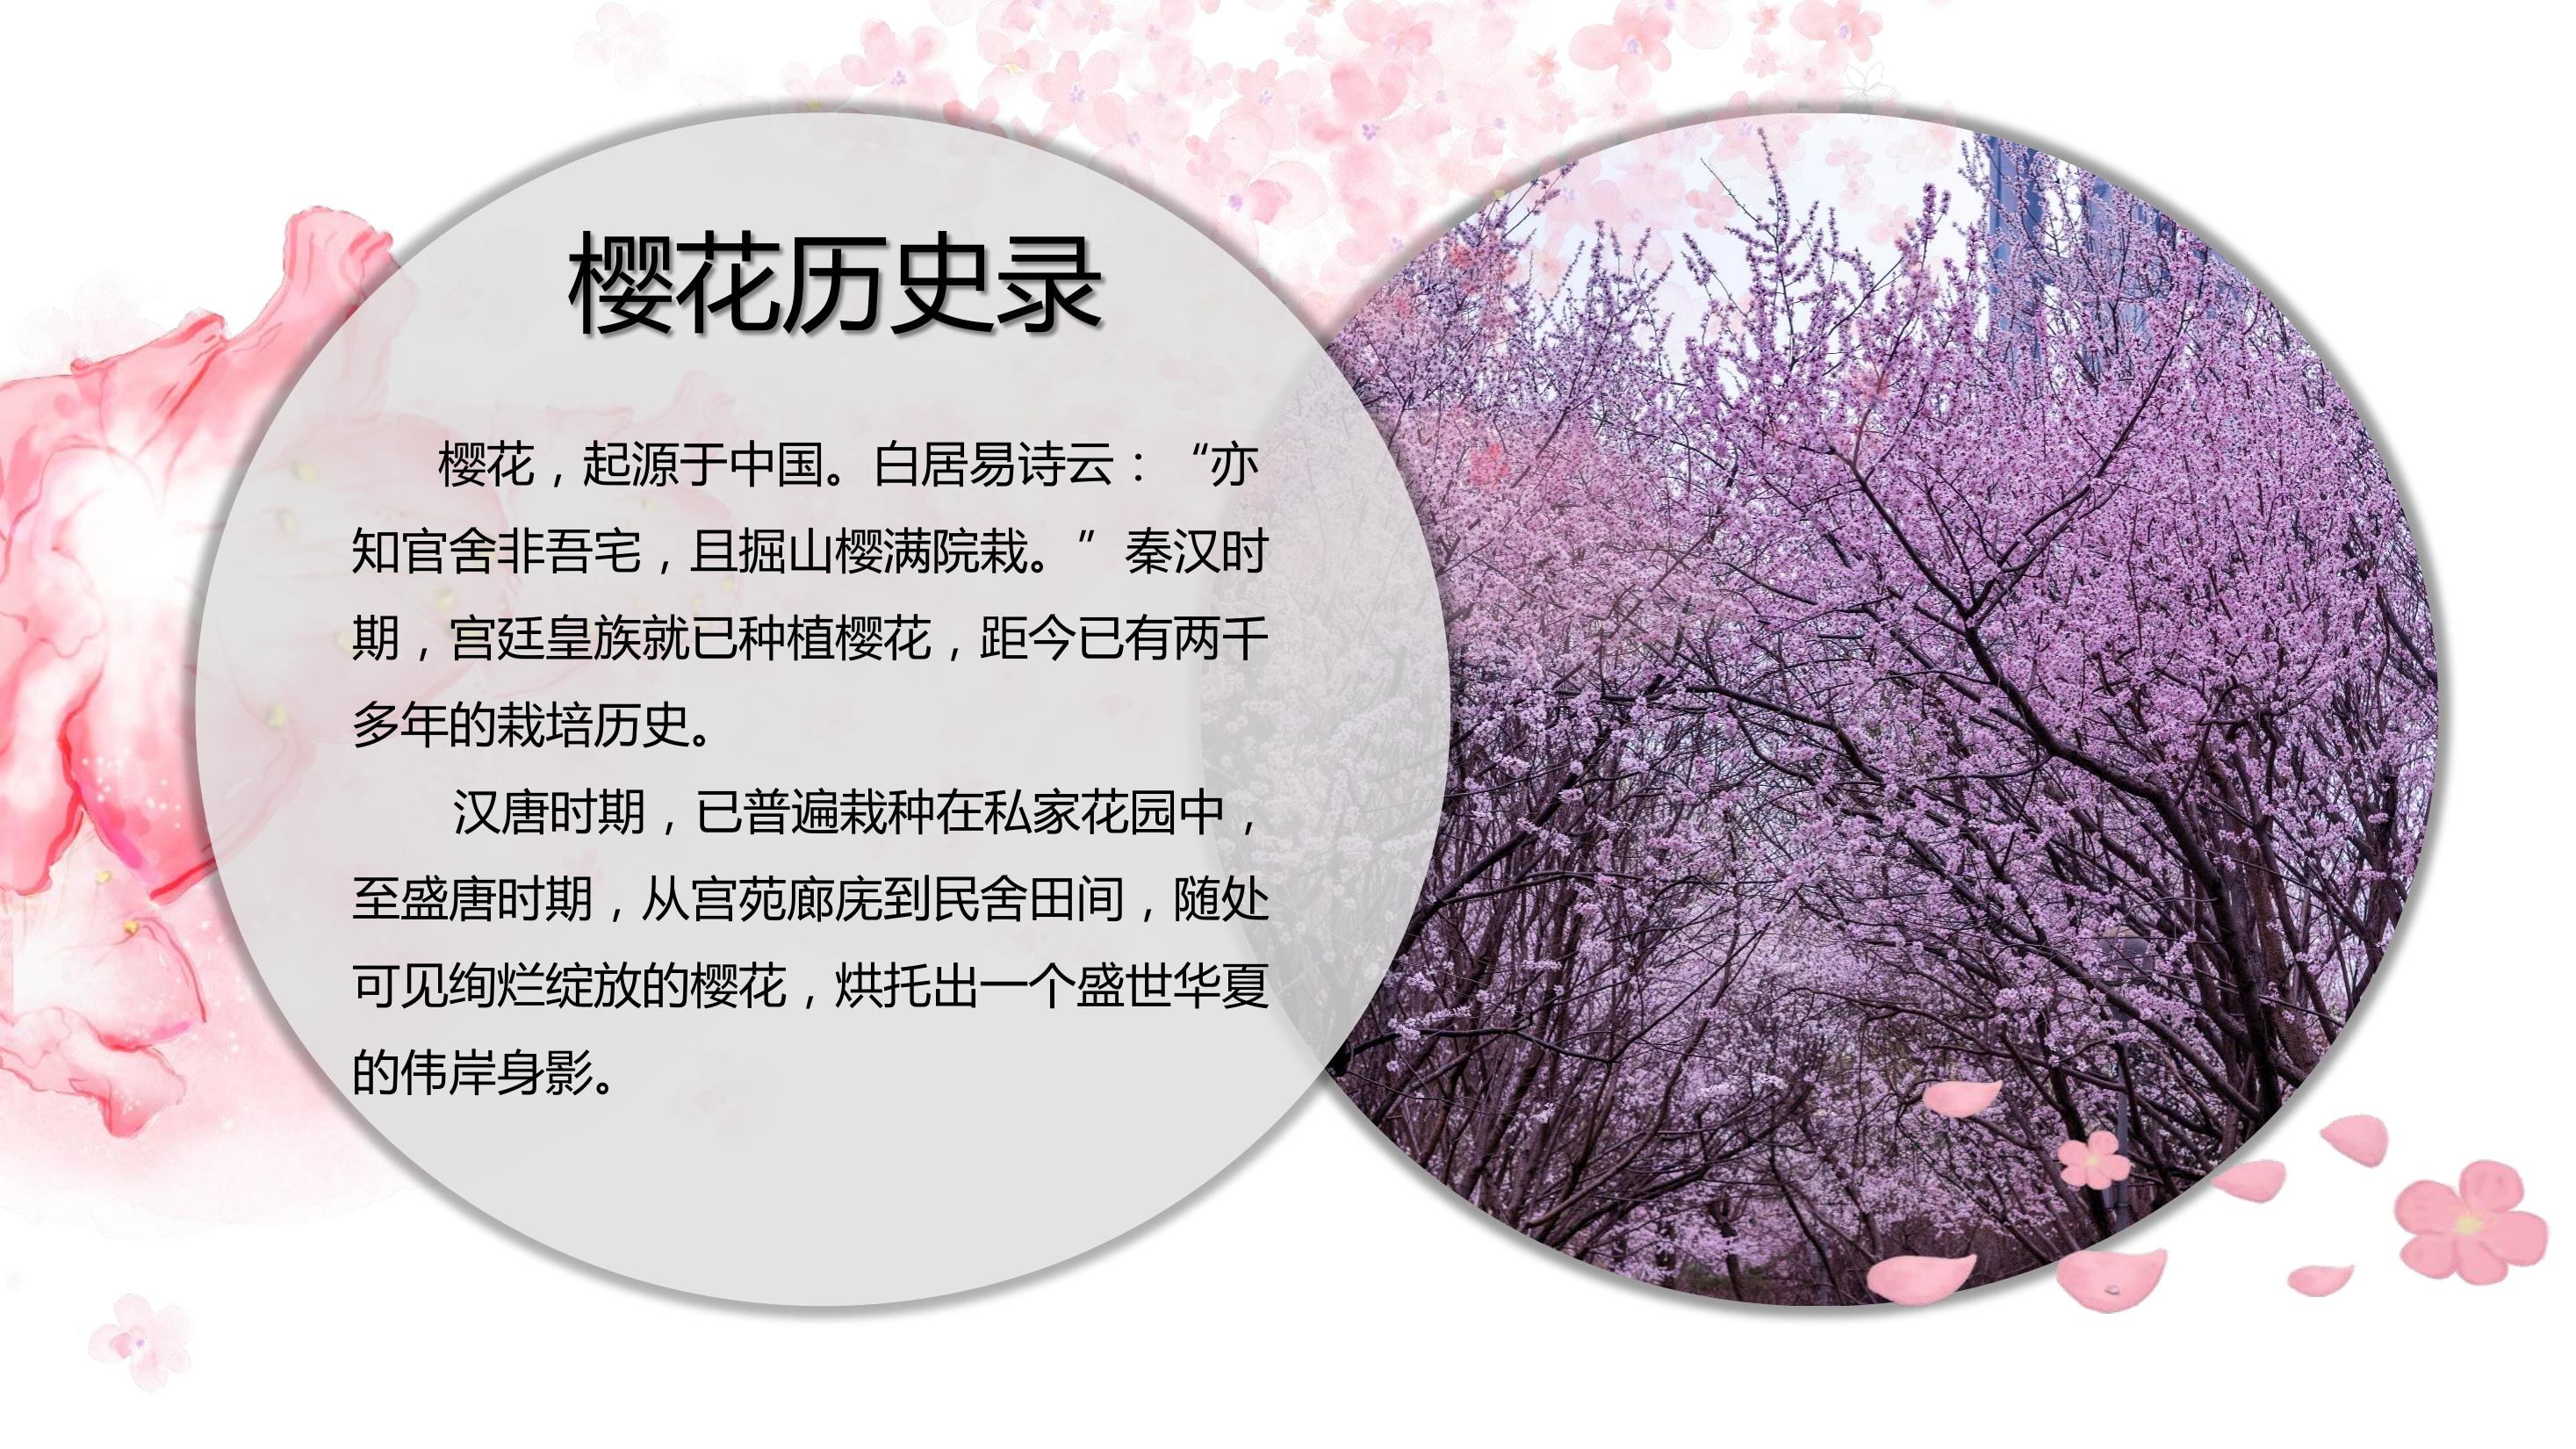 中国传统的樱花文化图片